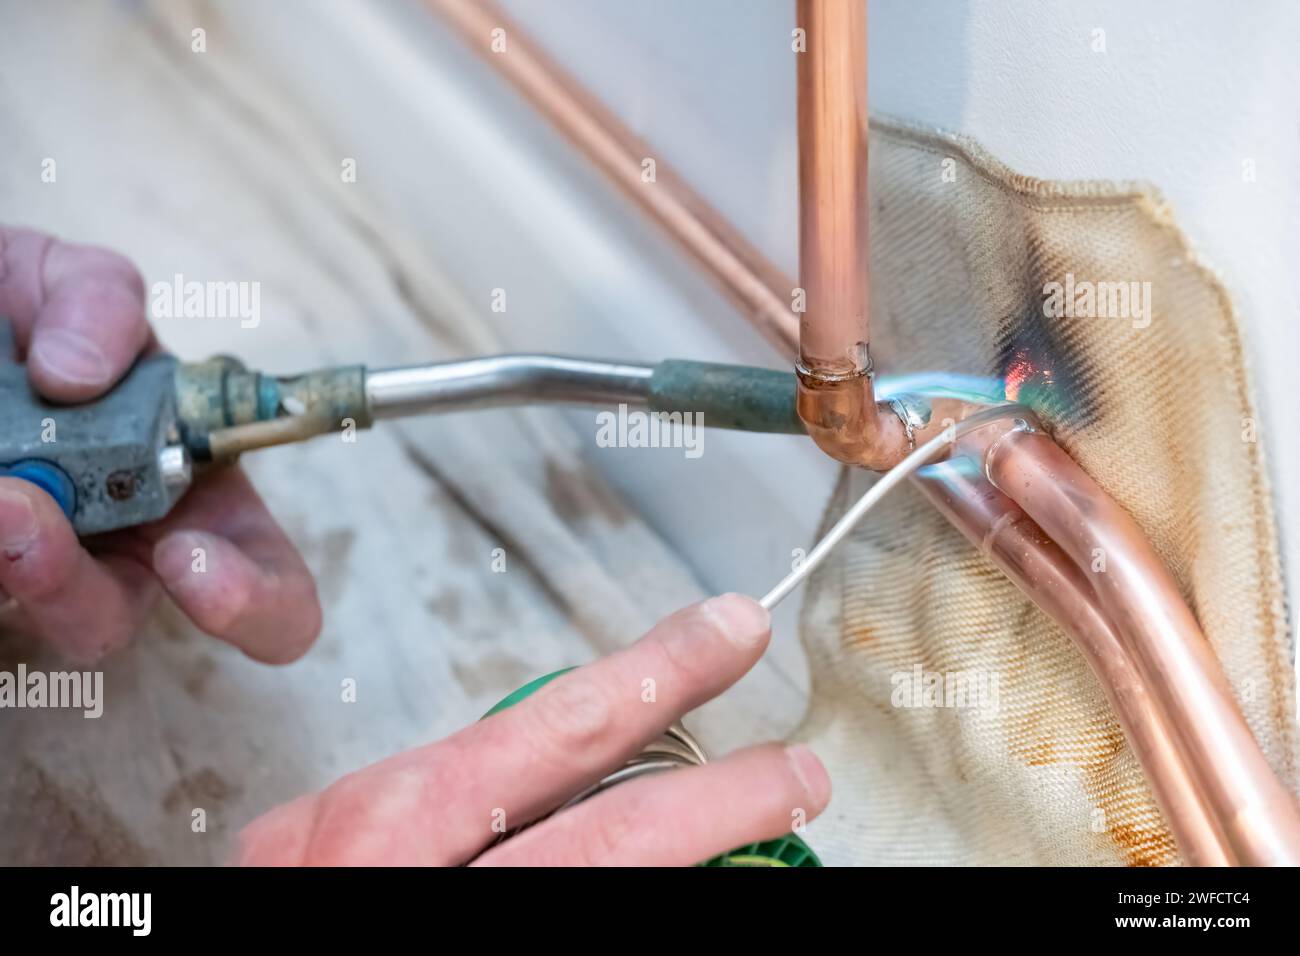 Un plombier chauffant la tuyauterie en cuivre avec un chalumeau. L'ingénieur en chauffage joint deux tuyaux avec de la soudure fondue à l'aide d'un joint coudé. Banque D'Images